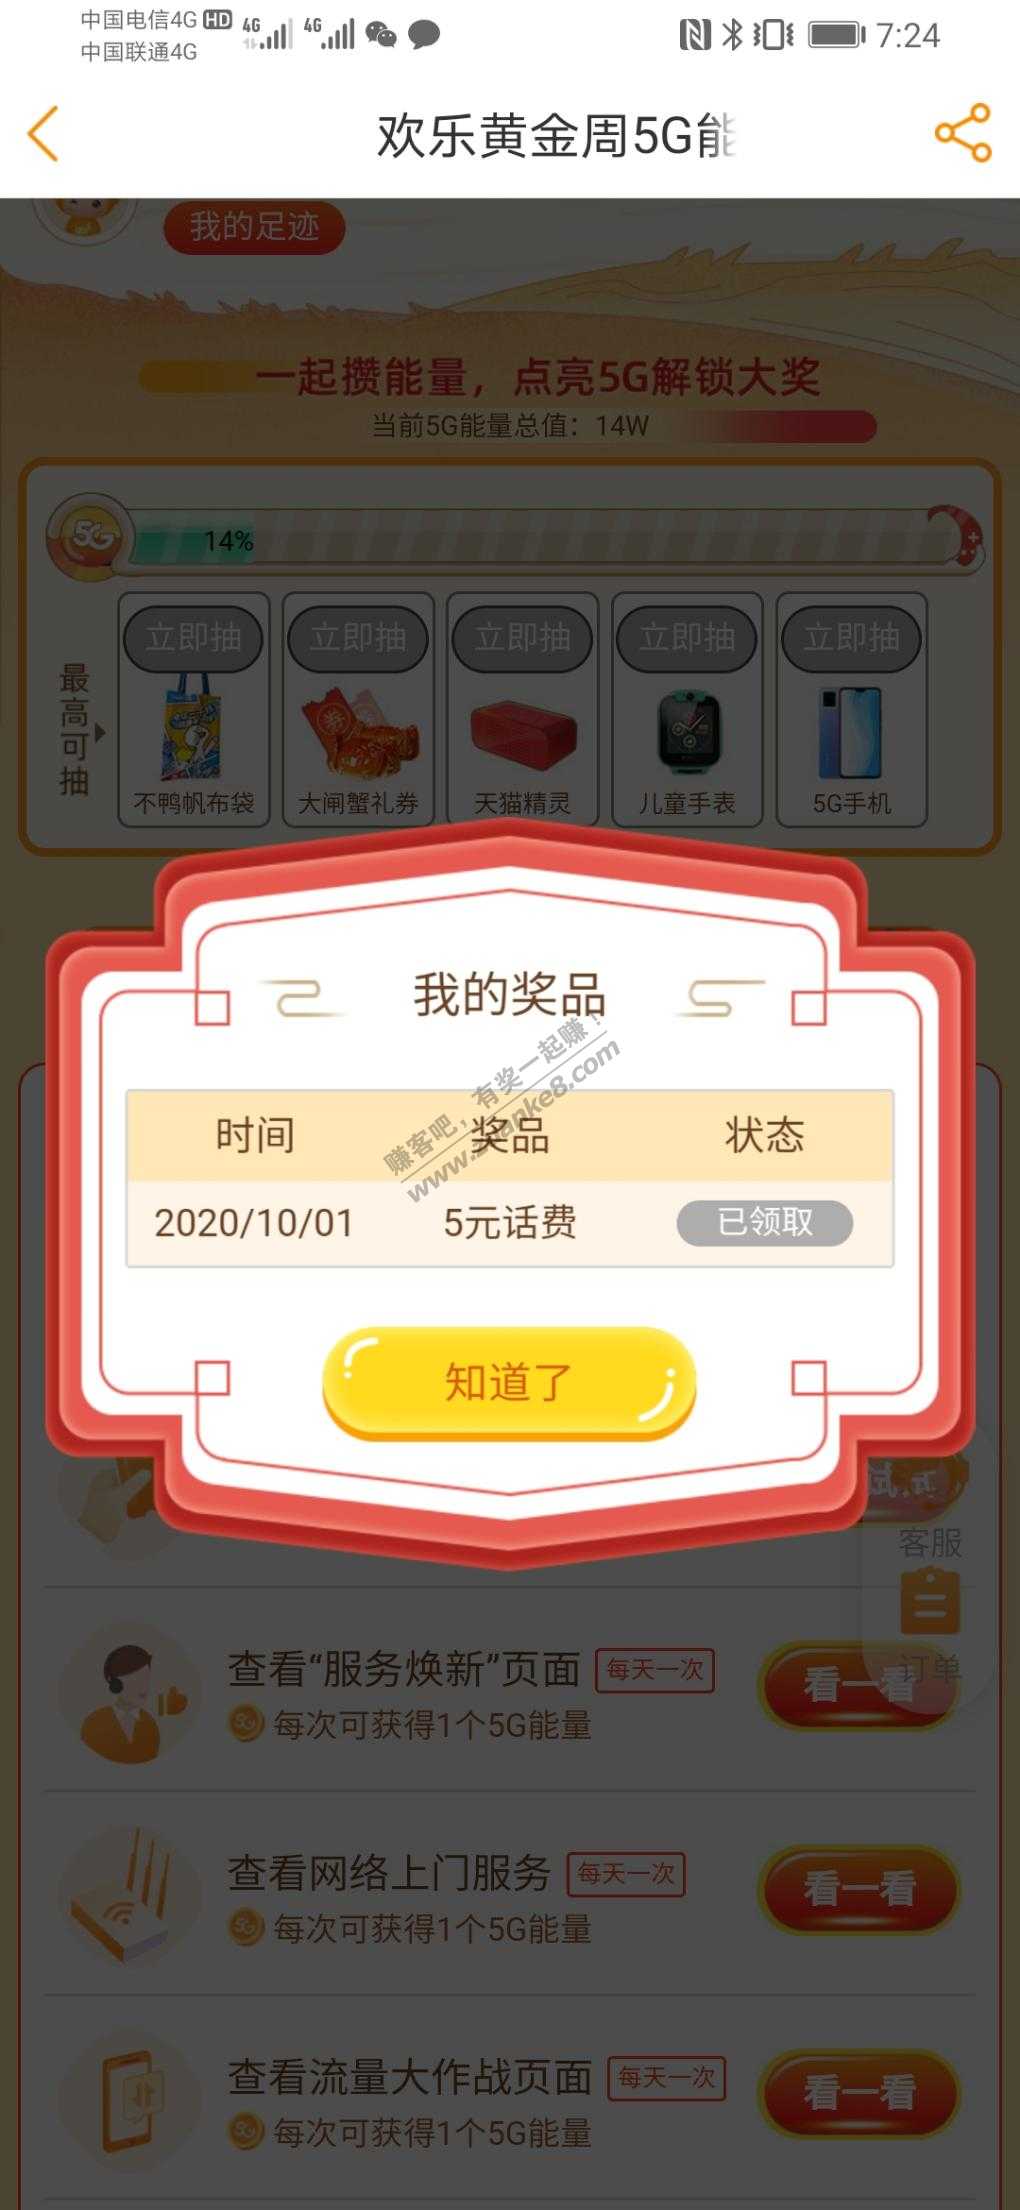 电信app刚中五元话费-惠小助(52huixz.com)